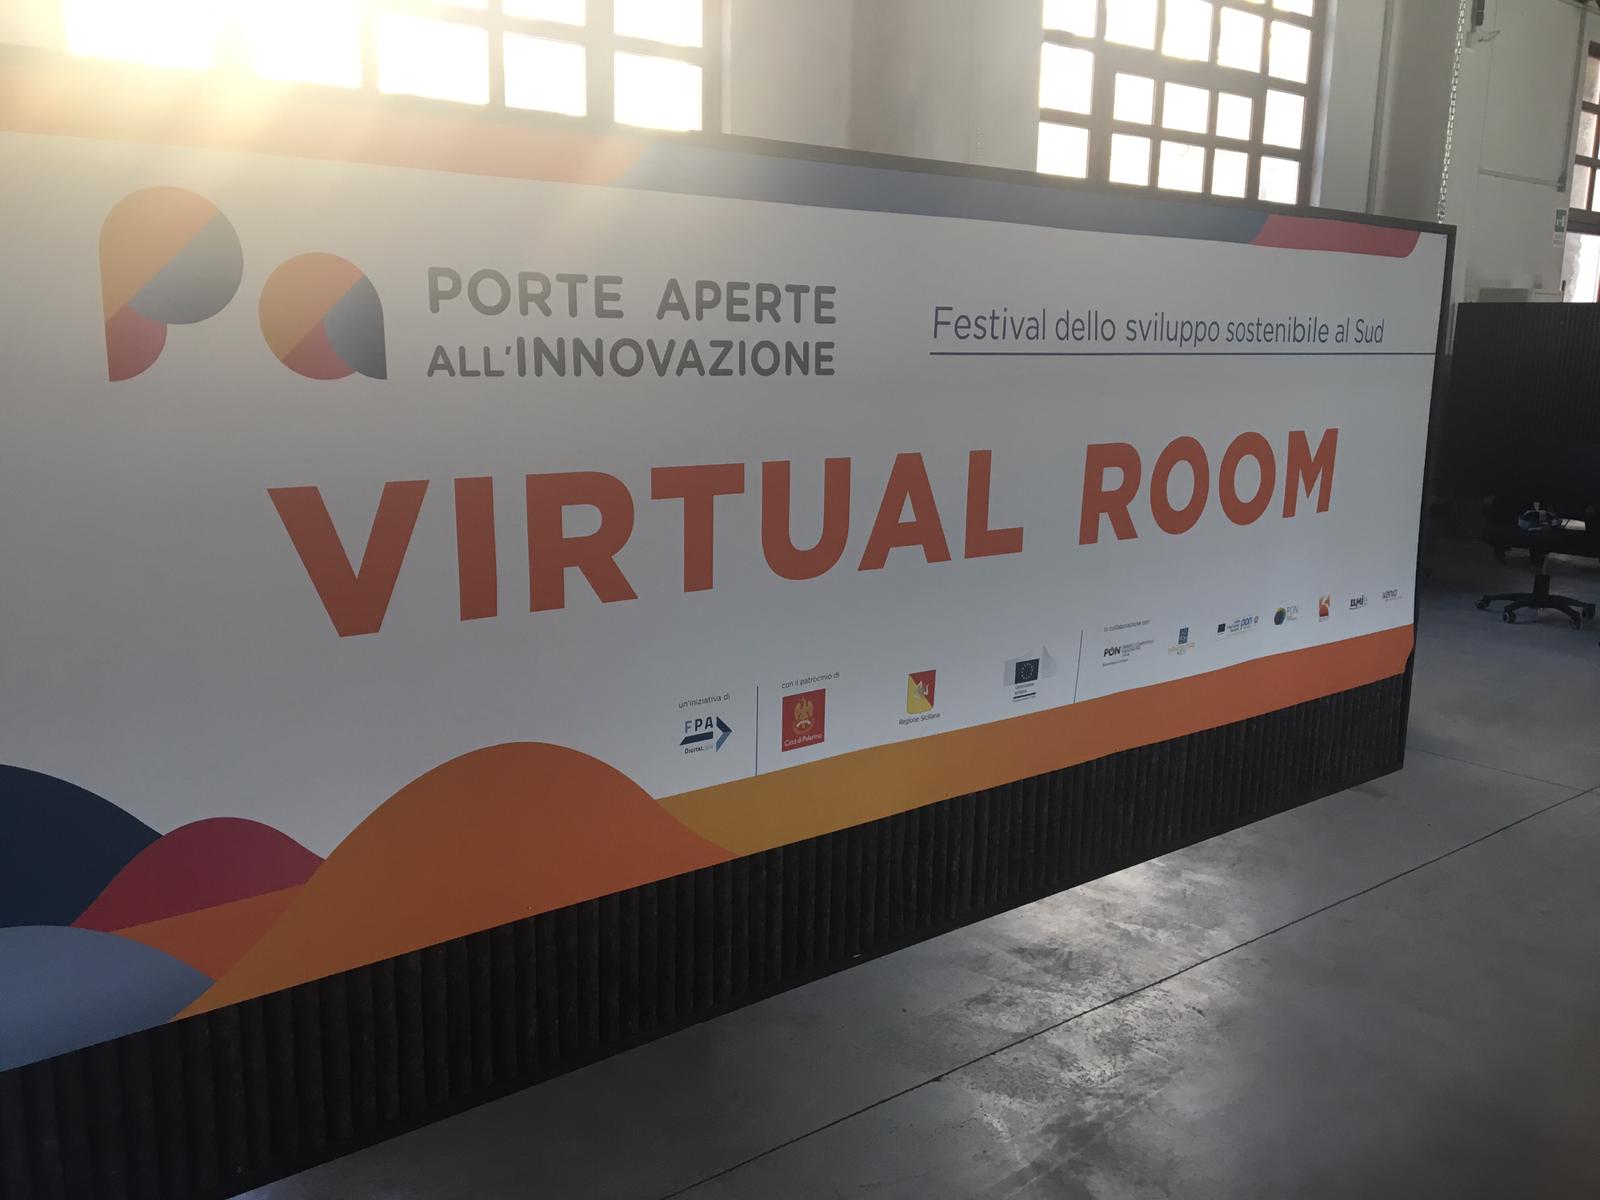  virtual room